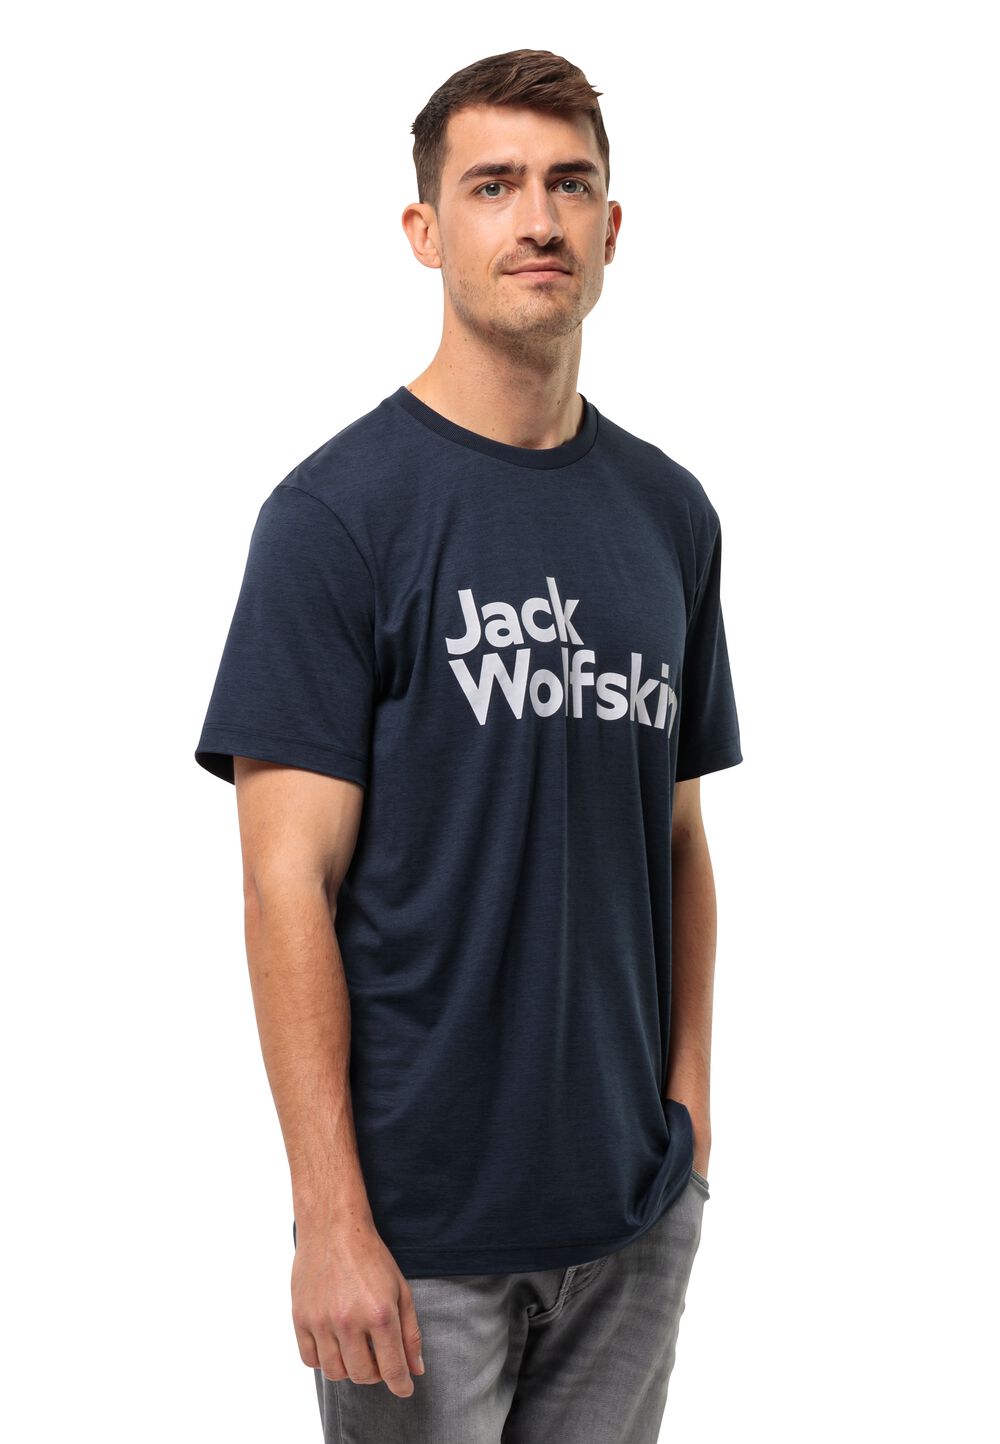 Jack Wolfskin Funktionsshirt Herren Brand T-Shirt Men M blau night blue von Jack Wolfskin